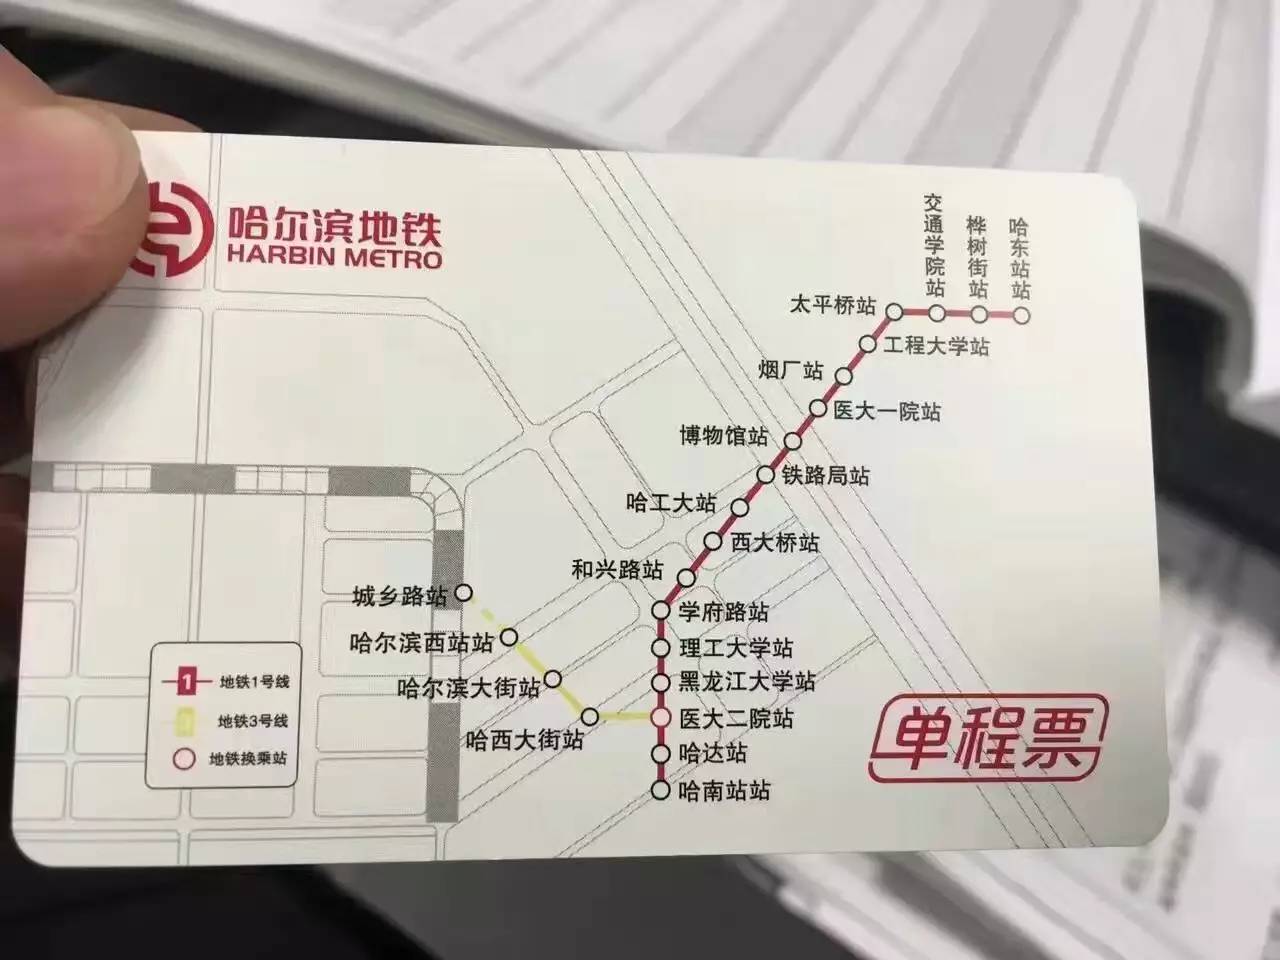 哈尔滨地铁三号线增设4座车站,香坊,呼兰将新建3条道路年底通车